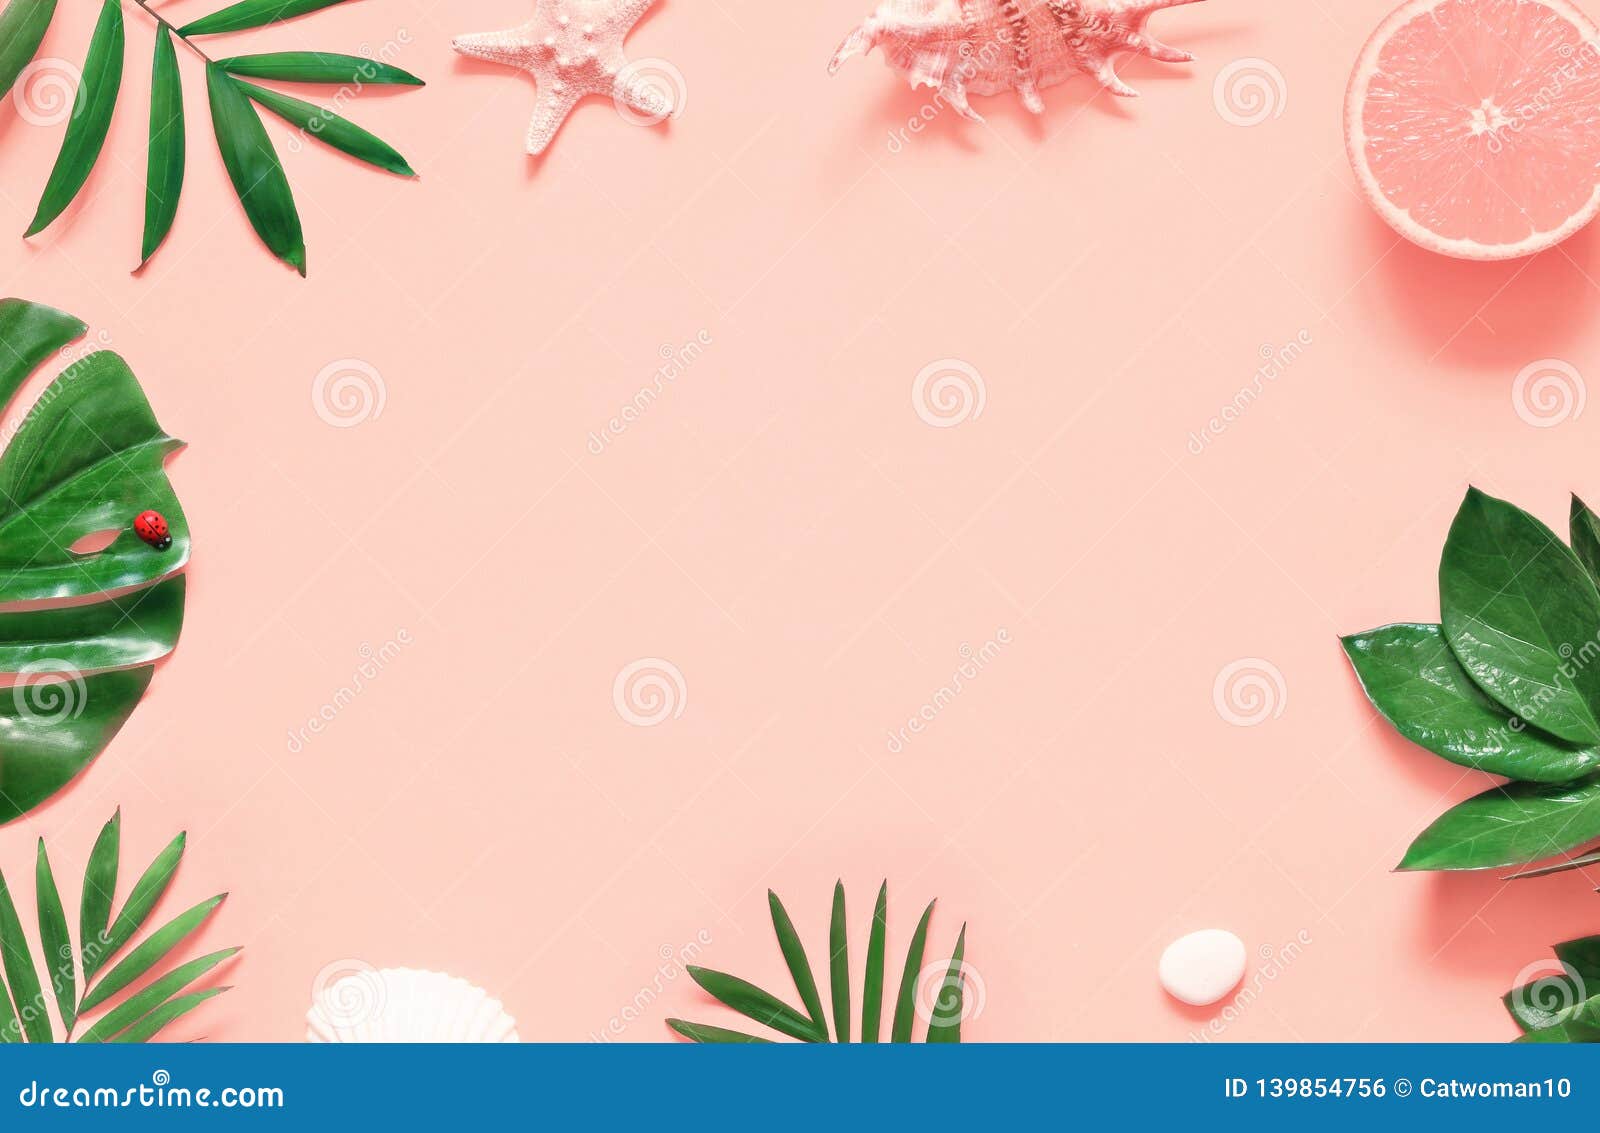 Với màu hồng nhiệt đới lung linh, hoa hồng nhiệt đới hồng trở thành nổi bật giữa những chủ đề ảnh khác. Hình ảnh này đem lại cảm giác ấm áp và dịu dàng, hứa hẹn sẽ đưa bạn đến những vùng đất đầy nắng gió, hạnh phúc và tình yêu. Hãy cùng ngắm nhìn và chiêm ngưỡng sức hút của hoa hồng nhiệt đới trong không gian thiên nhiên xanh tươi.